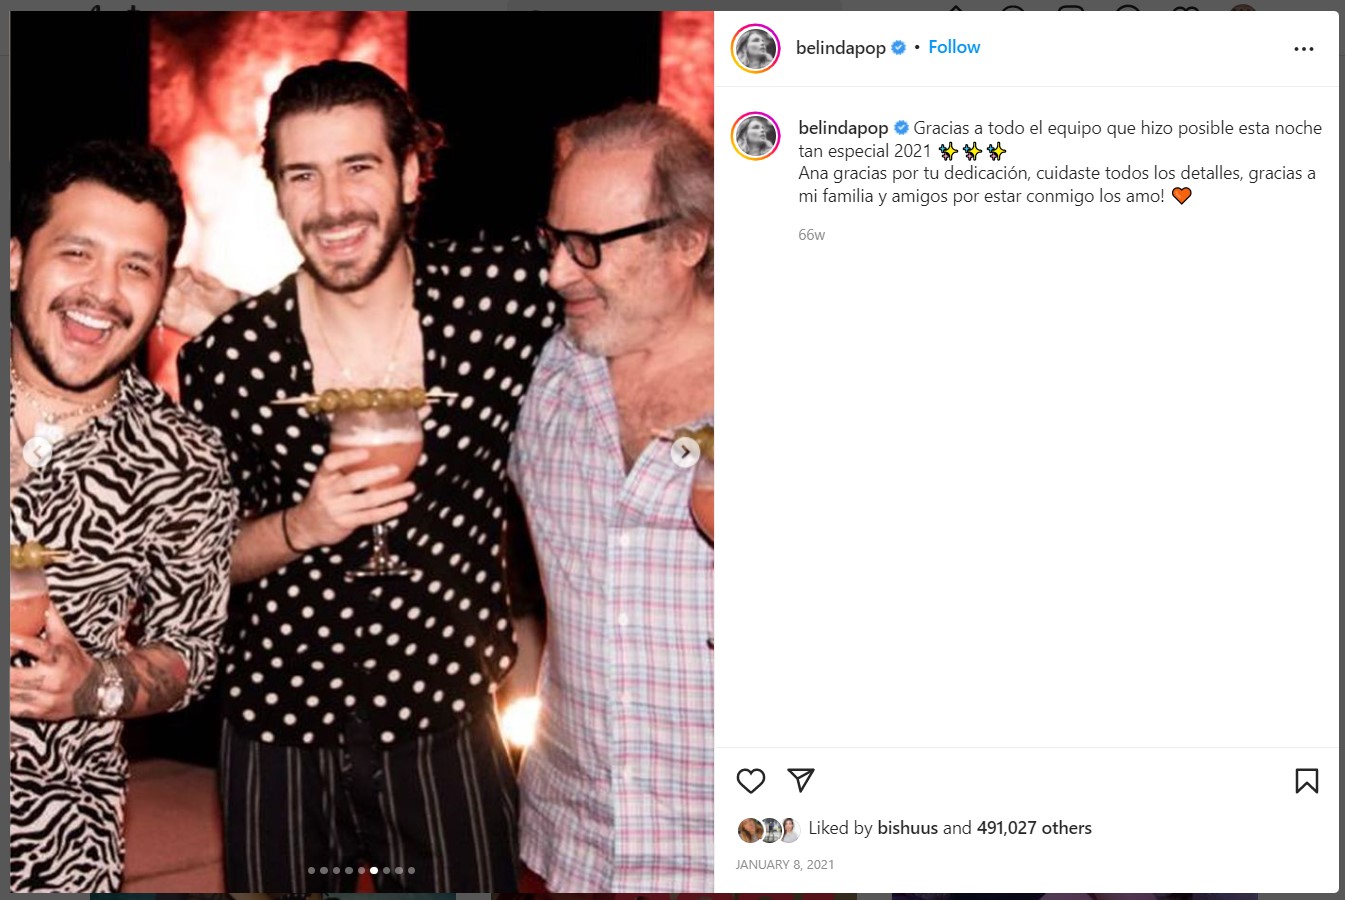 Christian Nodal aparece en una imagen "oculta" en el feed de Belinda (Foto: Instagram)